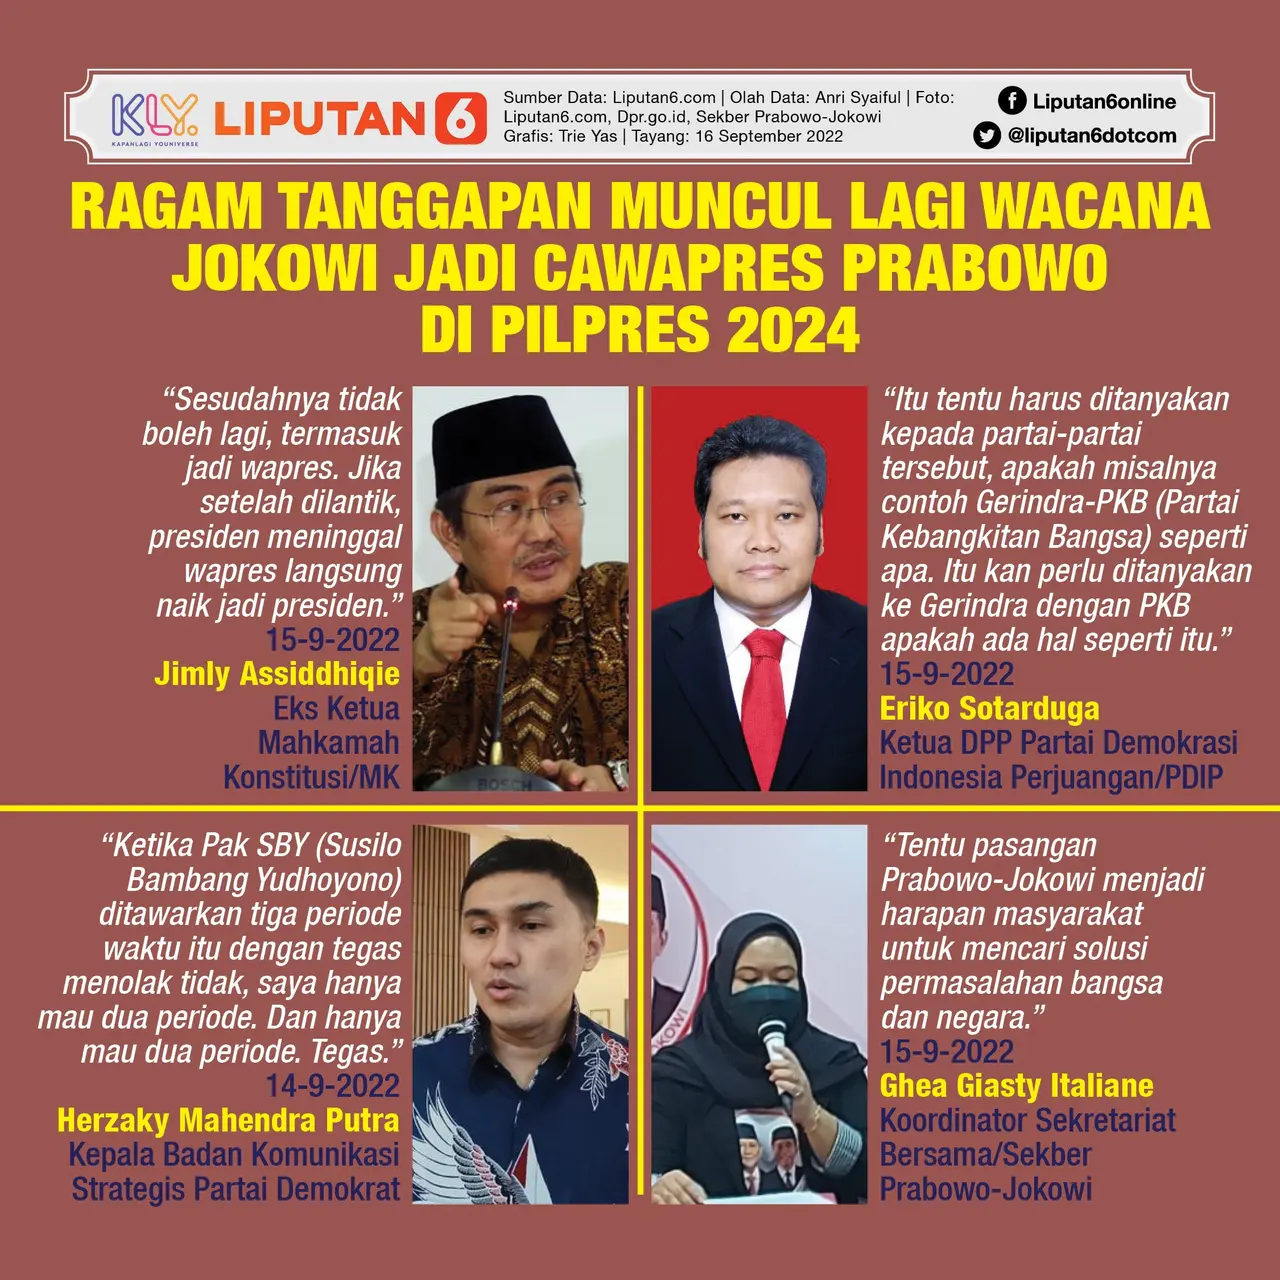 064968600_1663246946-Infografis_SQ_Ragam_Tanggapan_Muncul_Lagi_Wacana_Jokowi_Jadi_Cawapres_Prabowo_di_Pilpres_2024.jpg